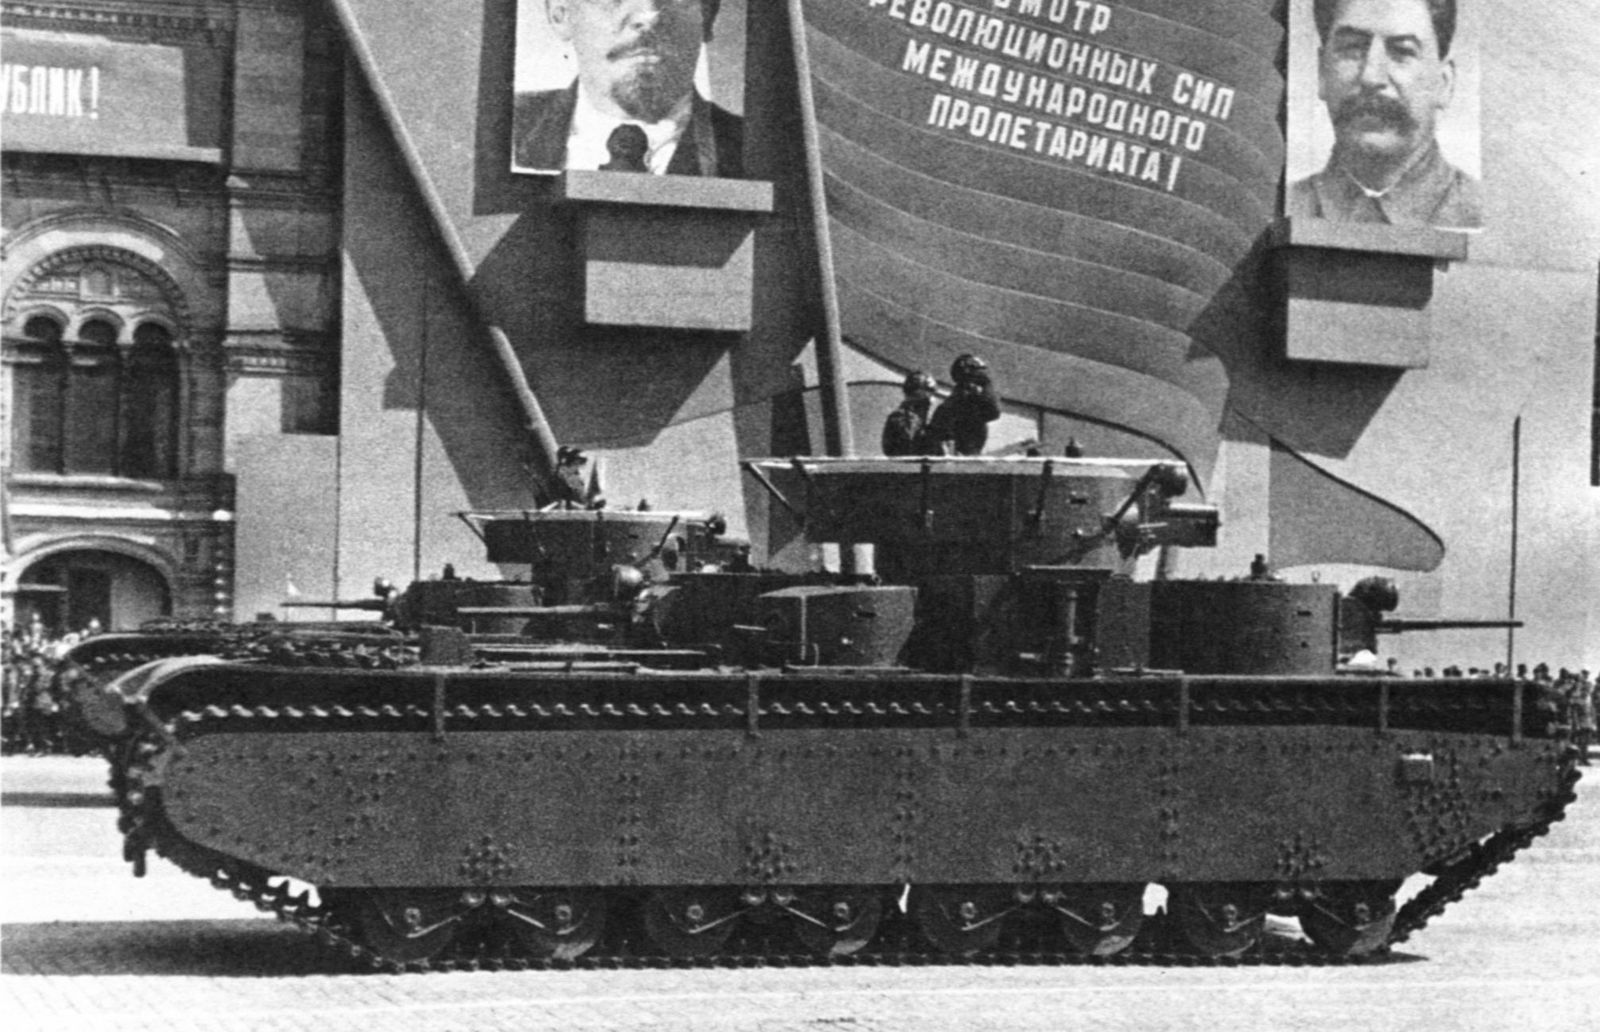 T-35 soviet heavy tank model 1937/38 in Moscow, 1941